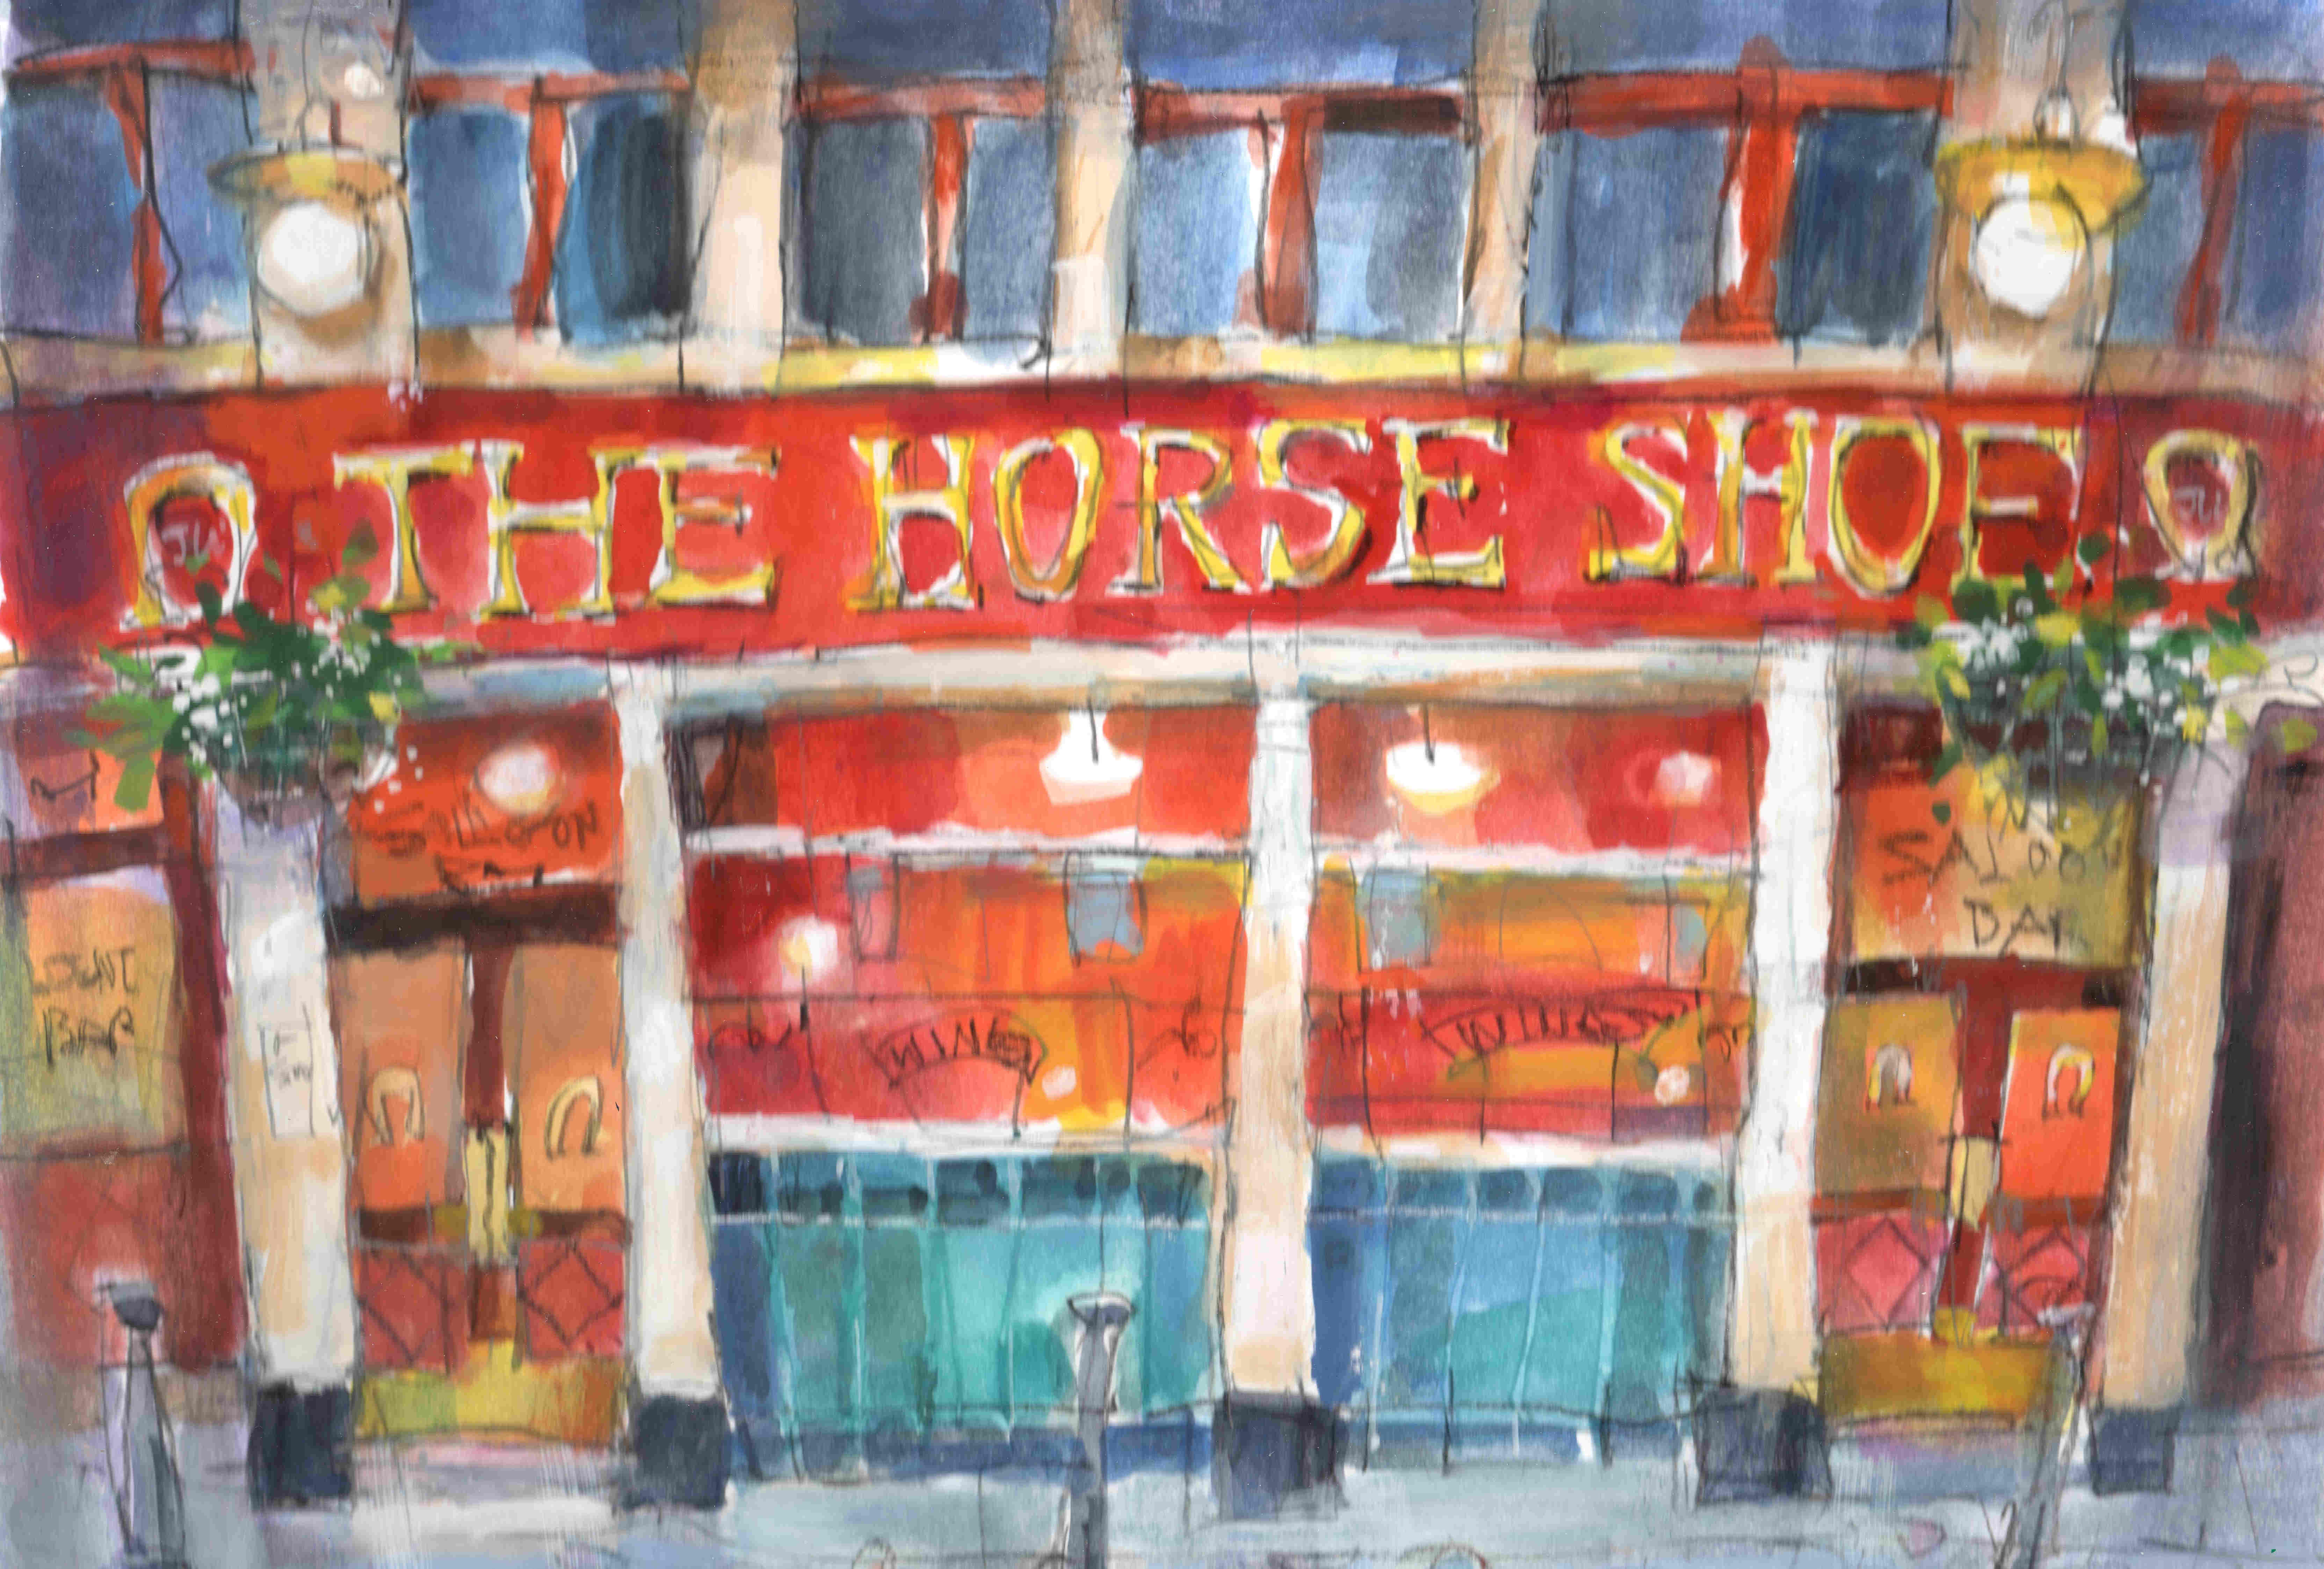 'Horseshoe Bar' by artist Ron Eardley